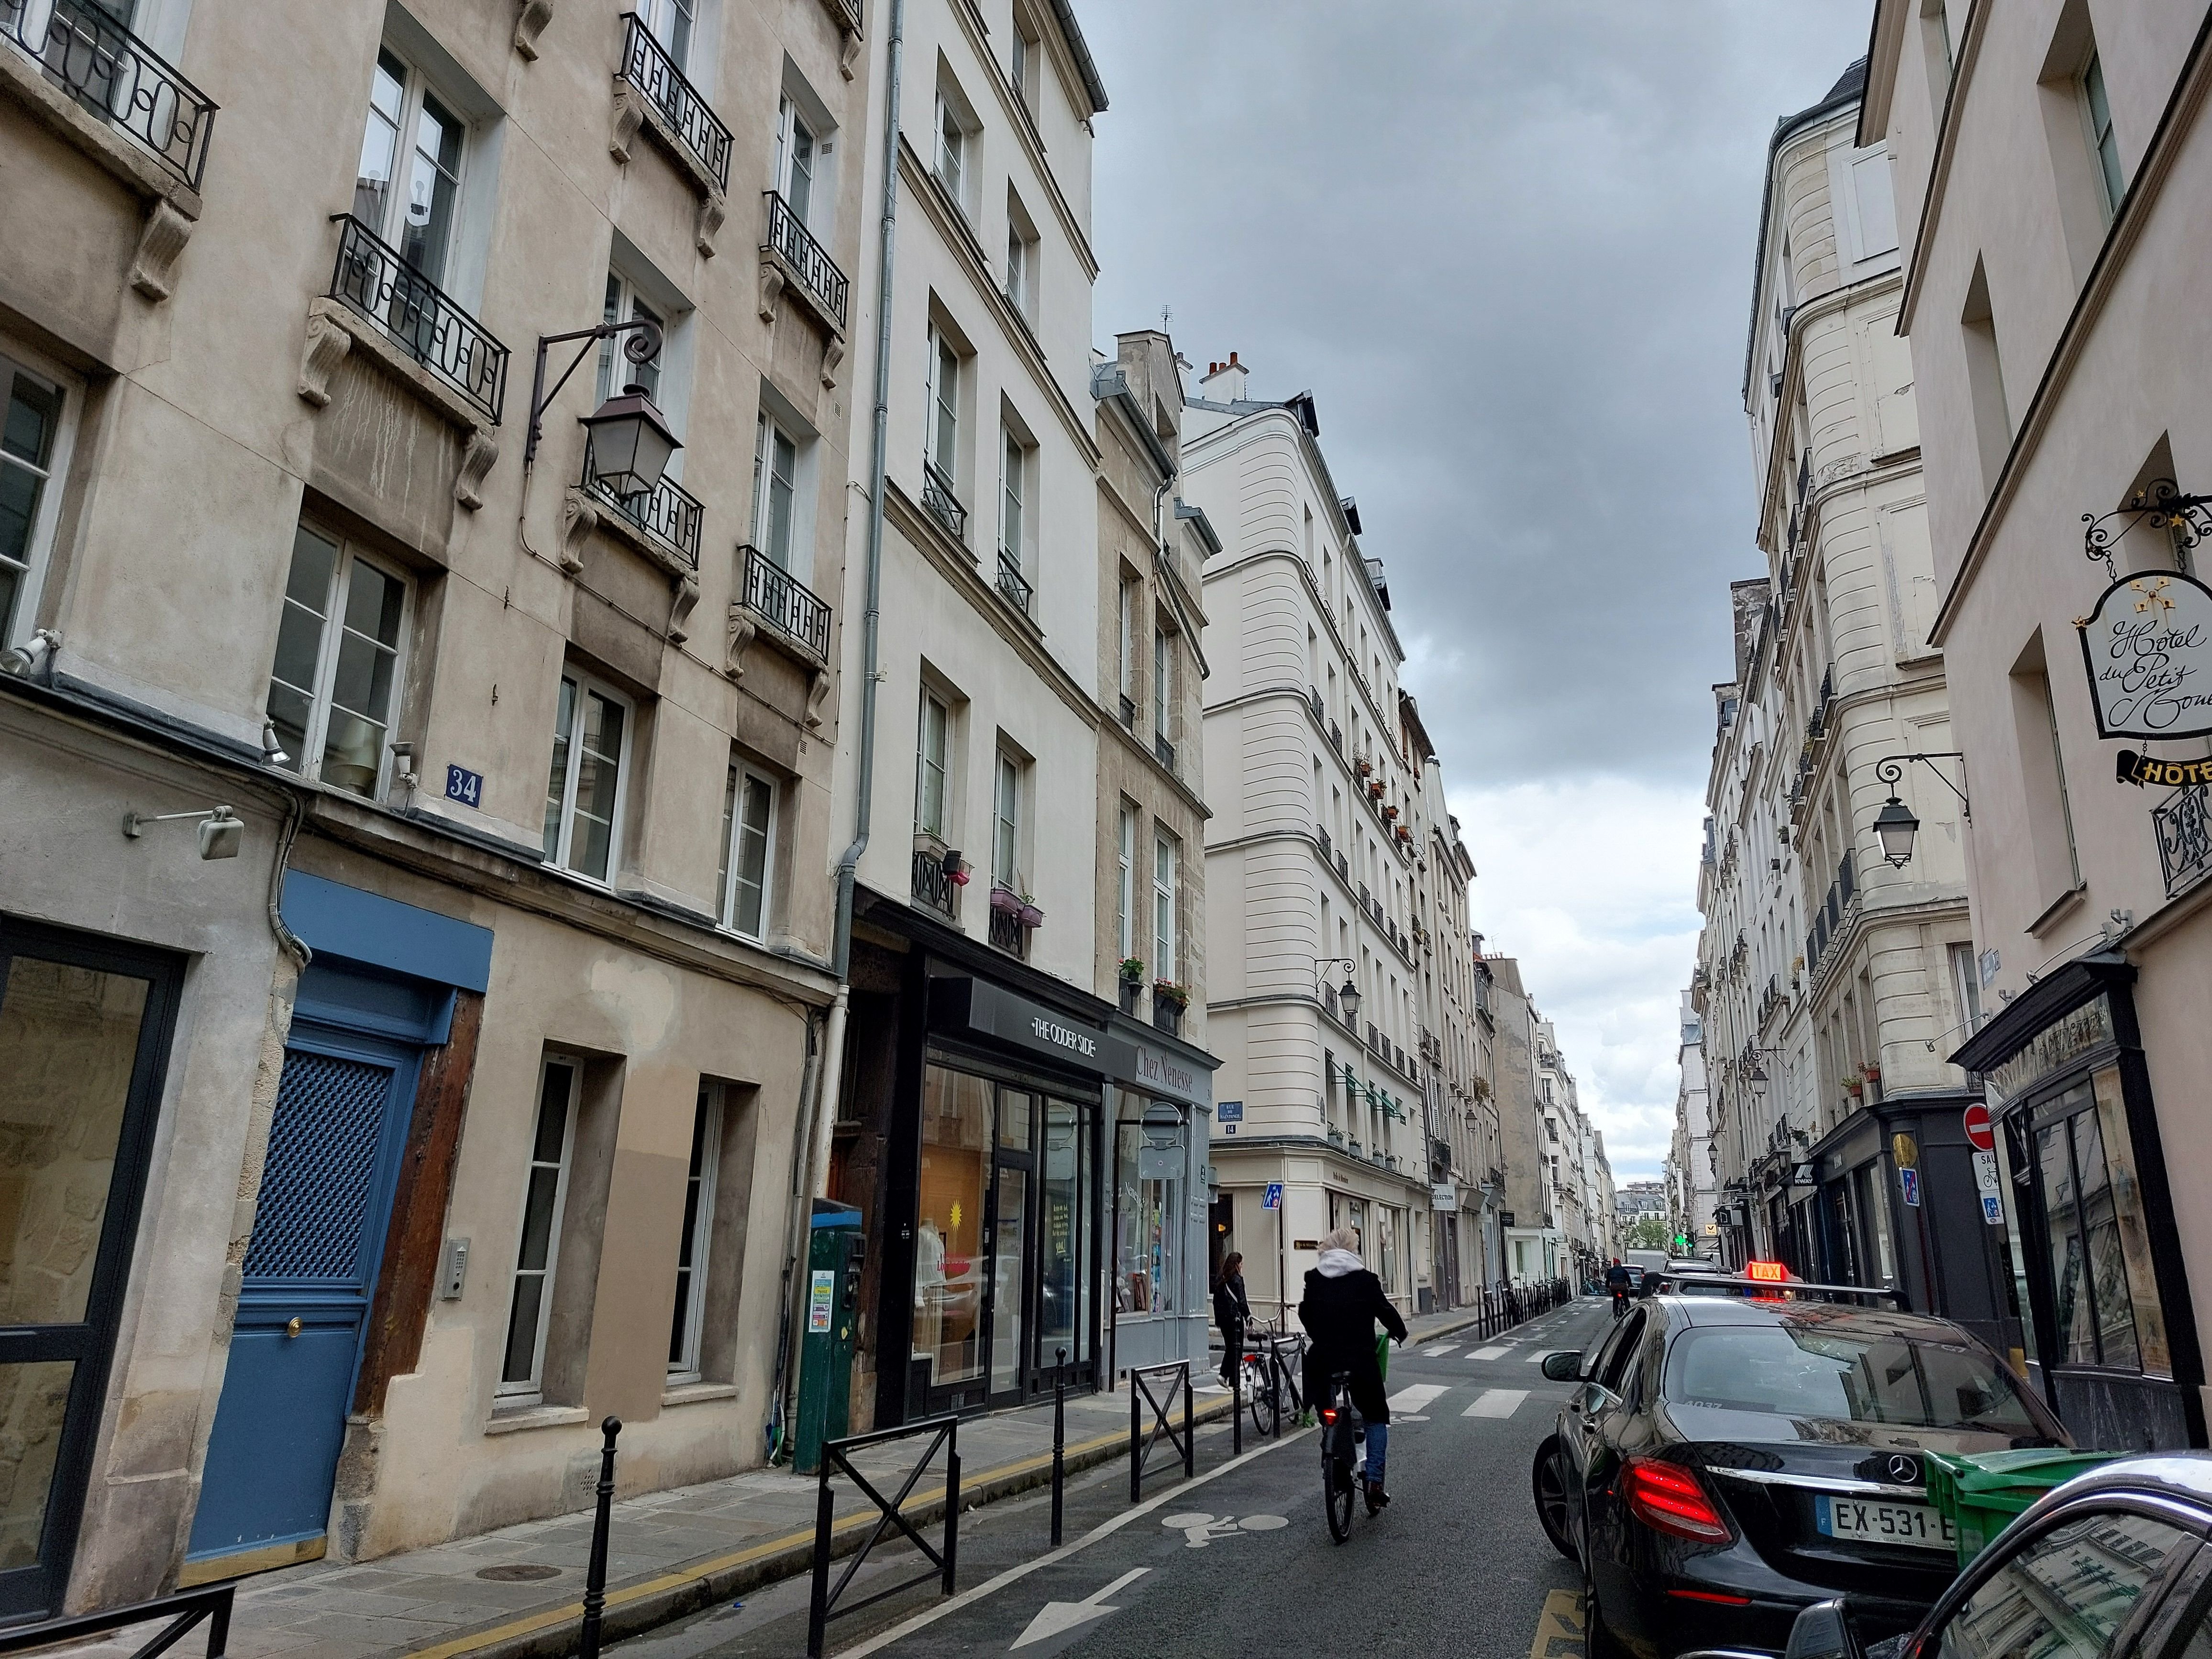 Une enquête a été ouverte pour faire la lumière sur un coup de feu et des blessés, dans un appartement de la rue de Poitou, à Paris (IIIe) dans le quartier du Marais au soir du 16 avril. LP/Carole Sterlé